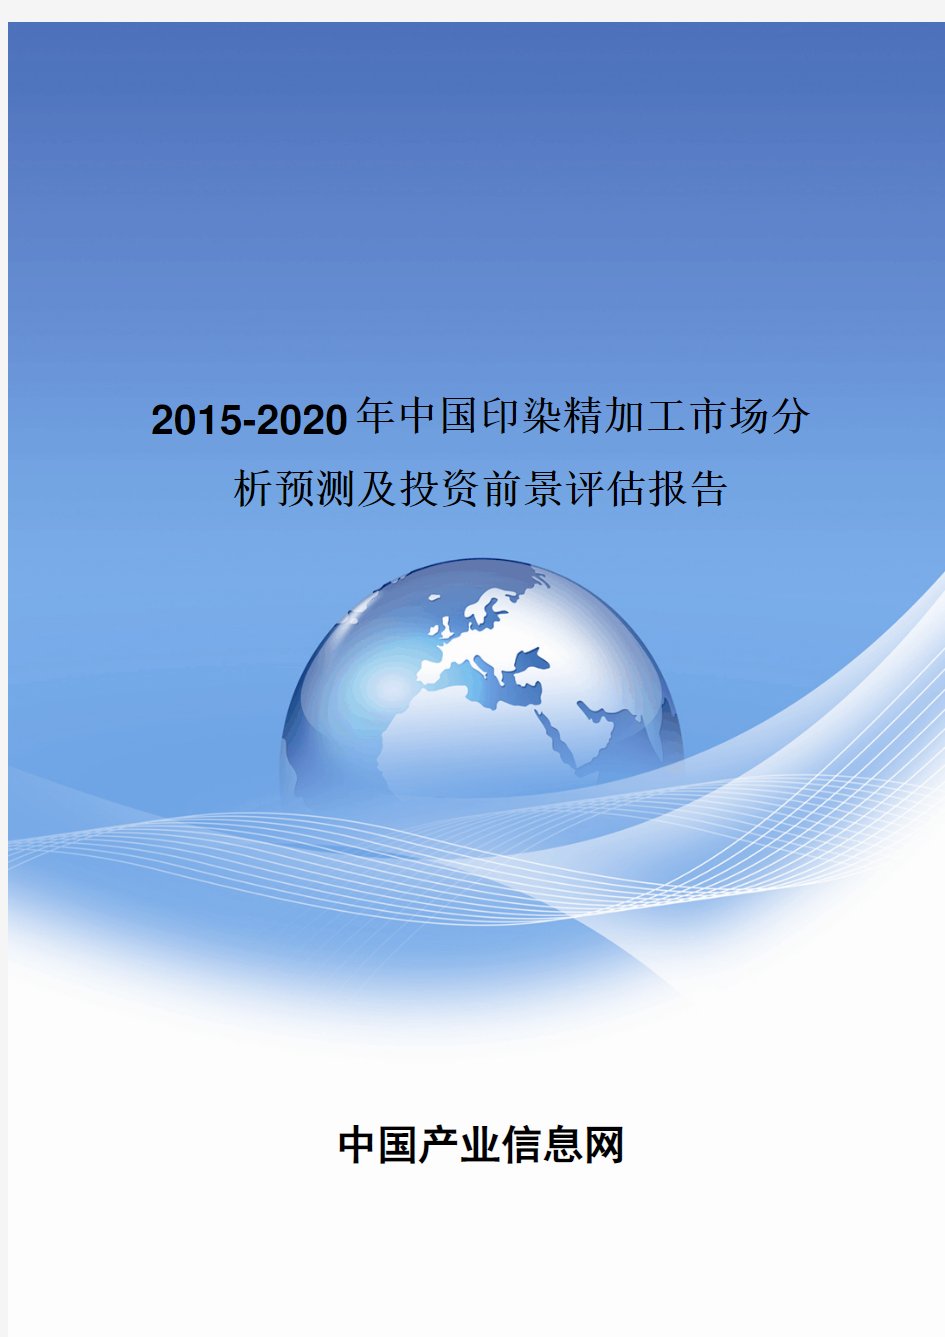 2015-2020年中国印染精加工市场分析预测及投资前景评估报告